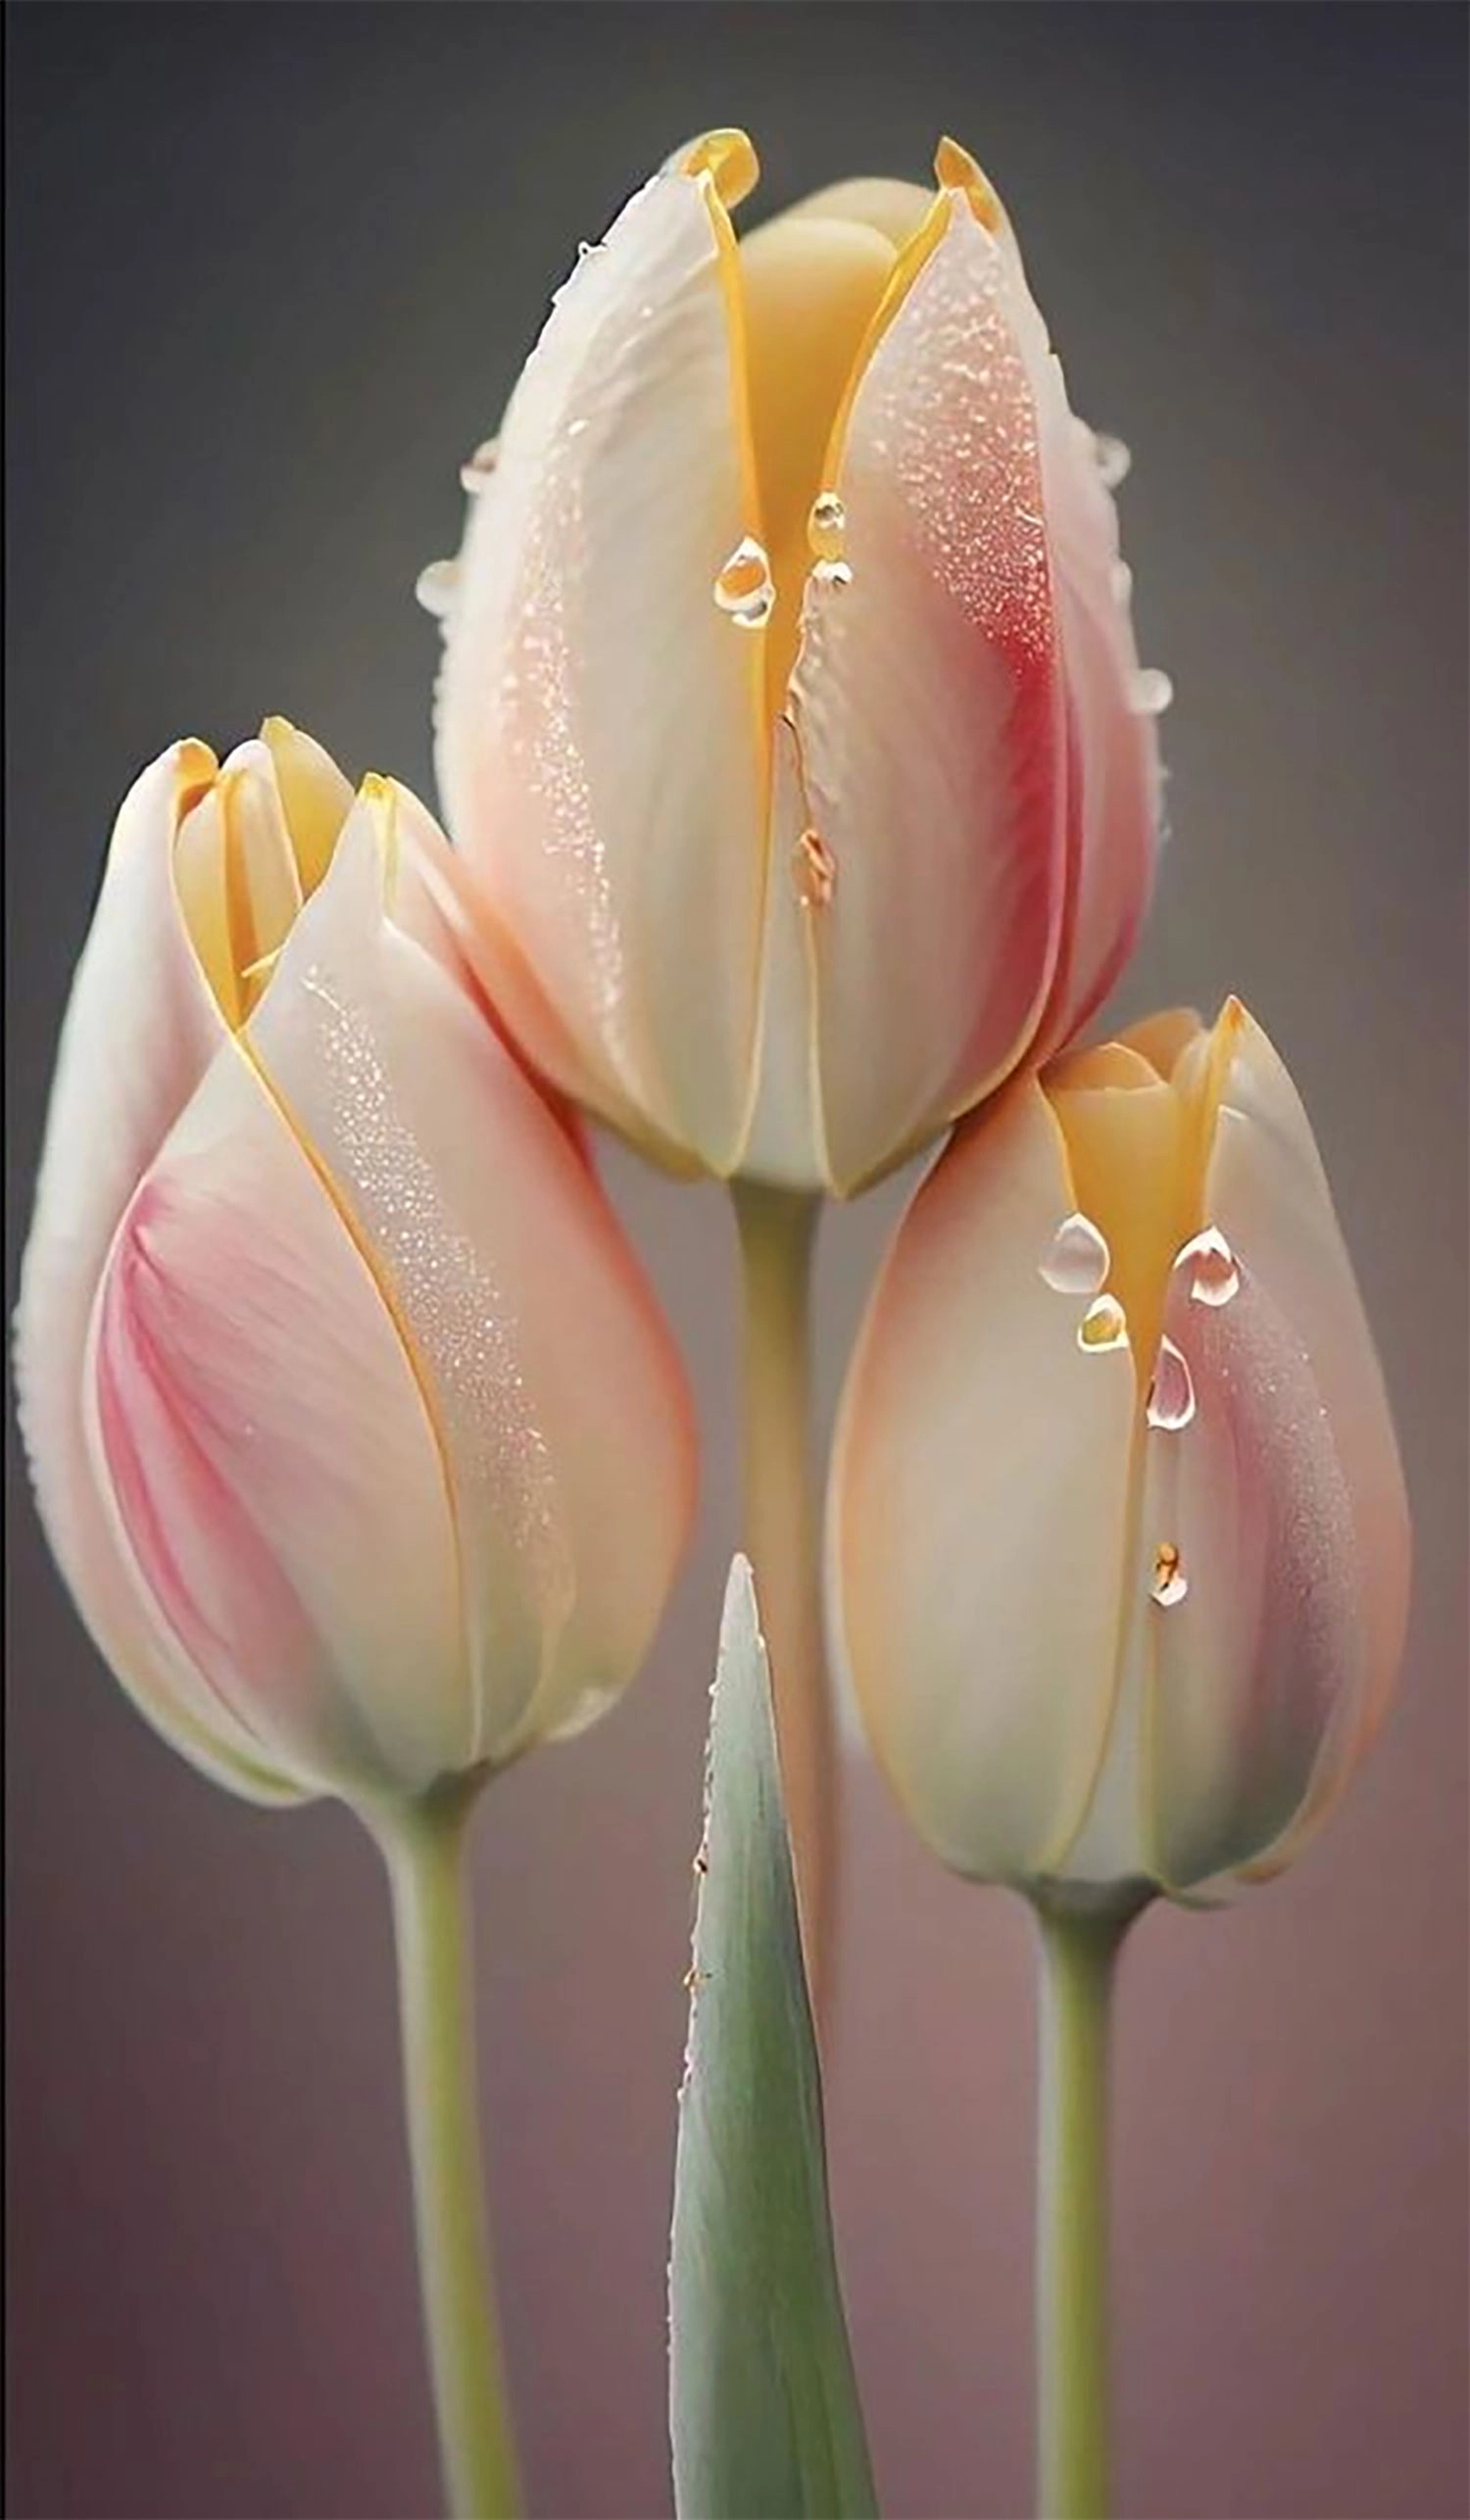  hinh-nen-hoa-tulip-21